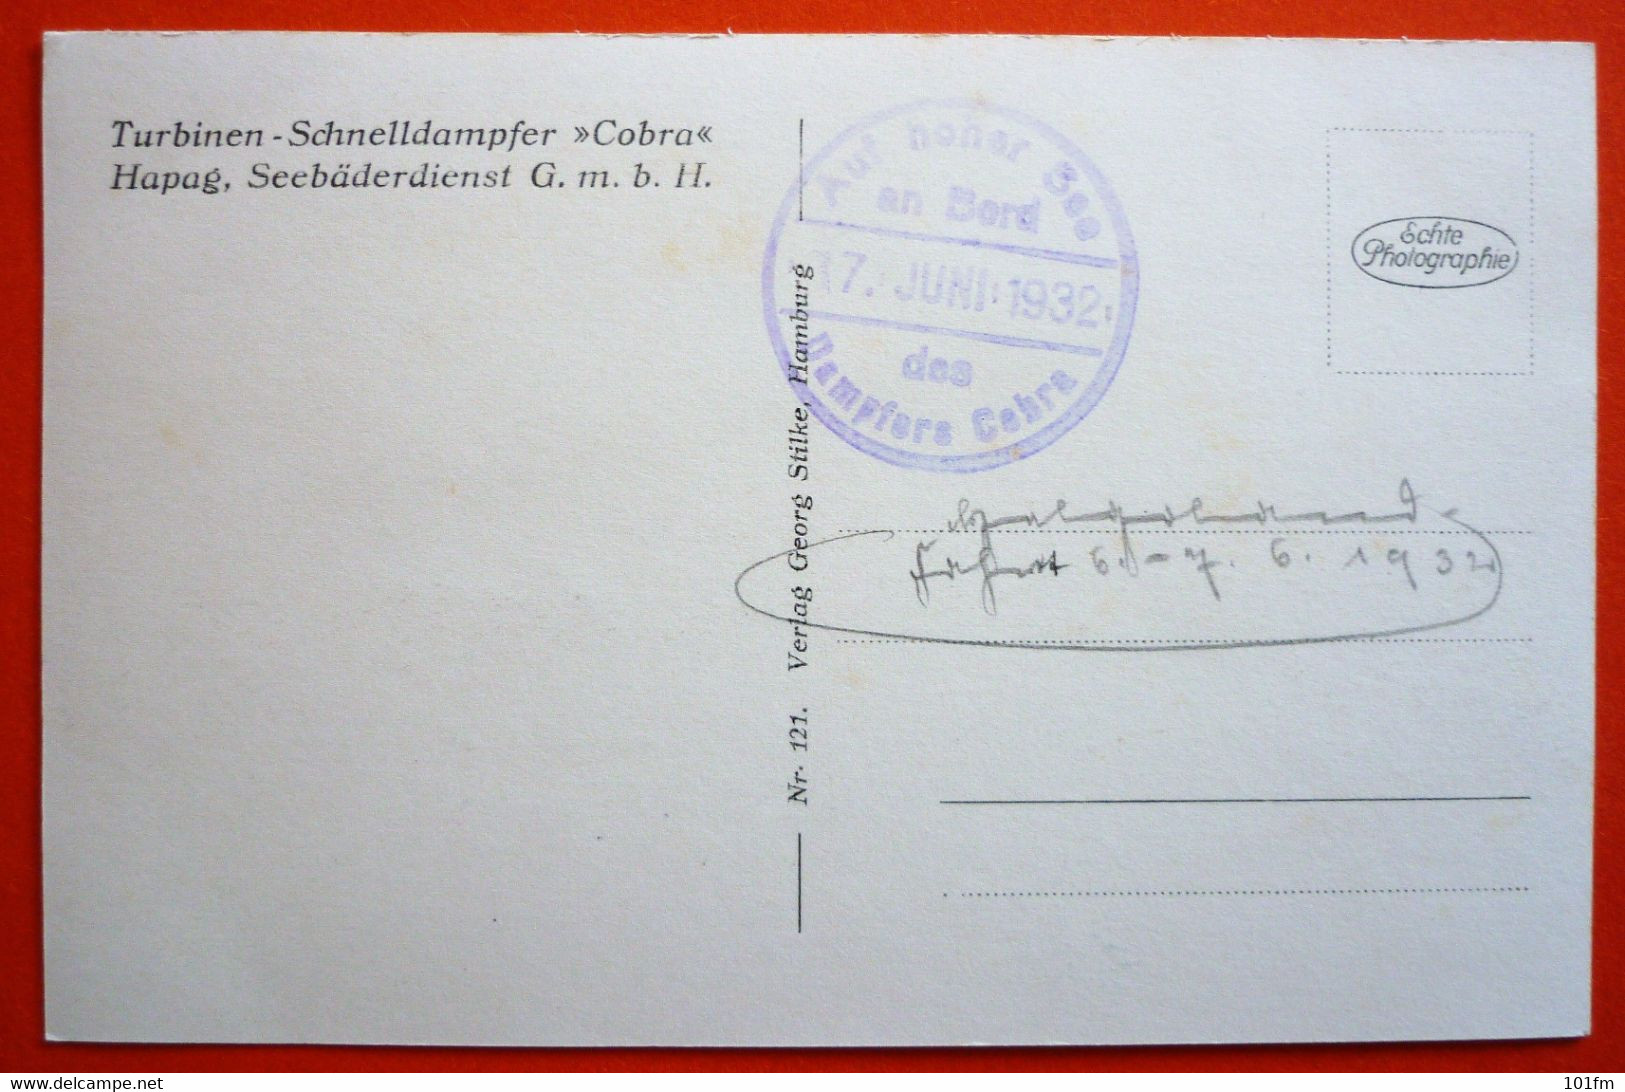 TURBINEN - SCHNELLDAMPFER "COBRA" - AUF HOHER SEE 17.JUNI.1932 - Paquebots